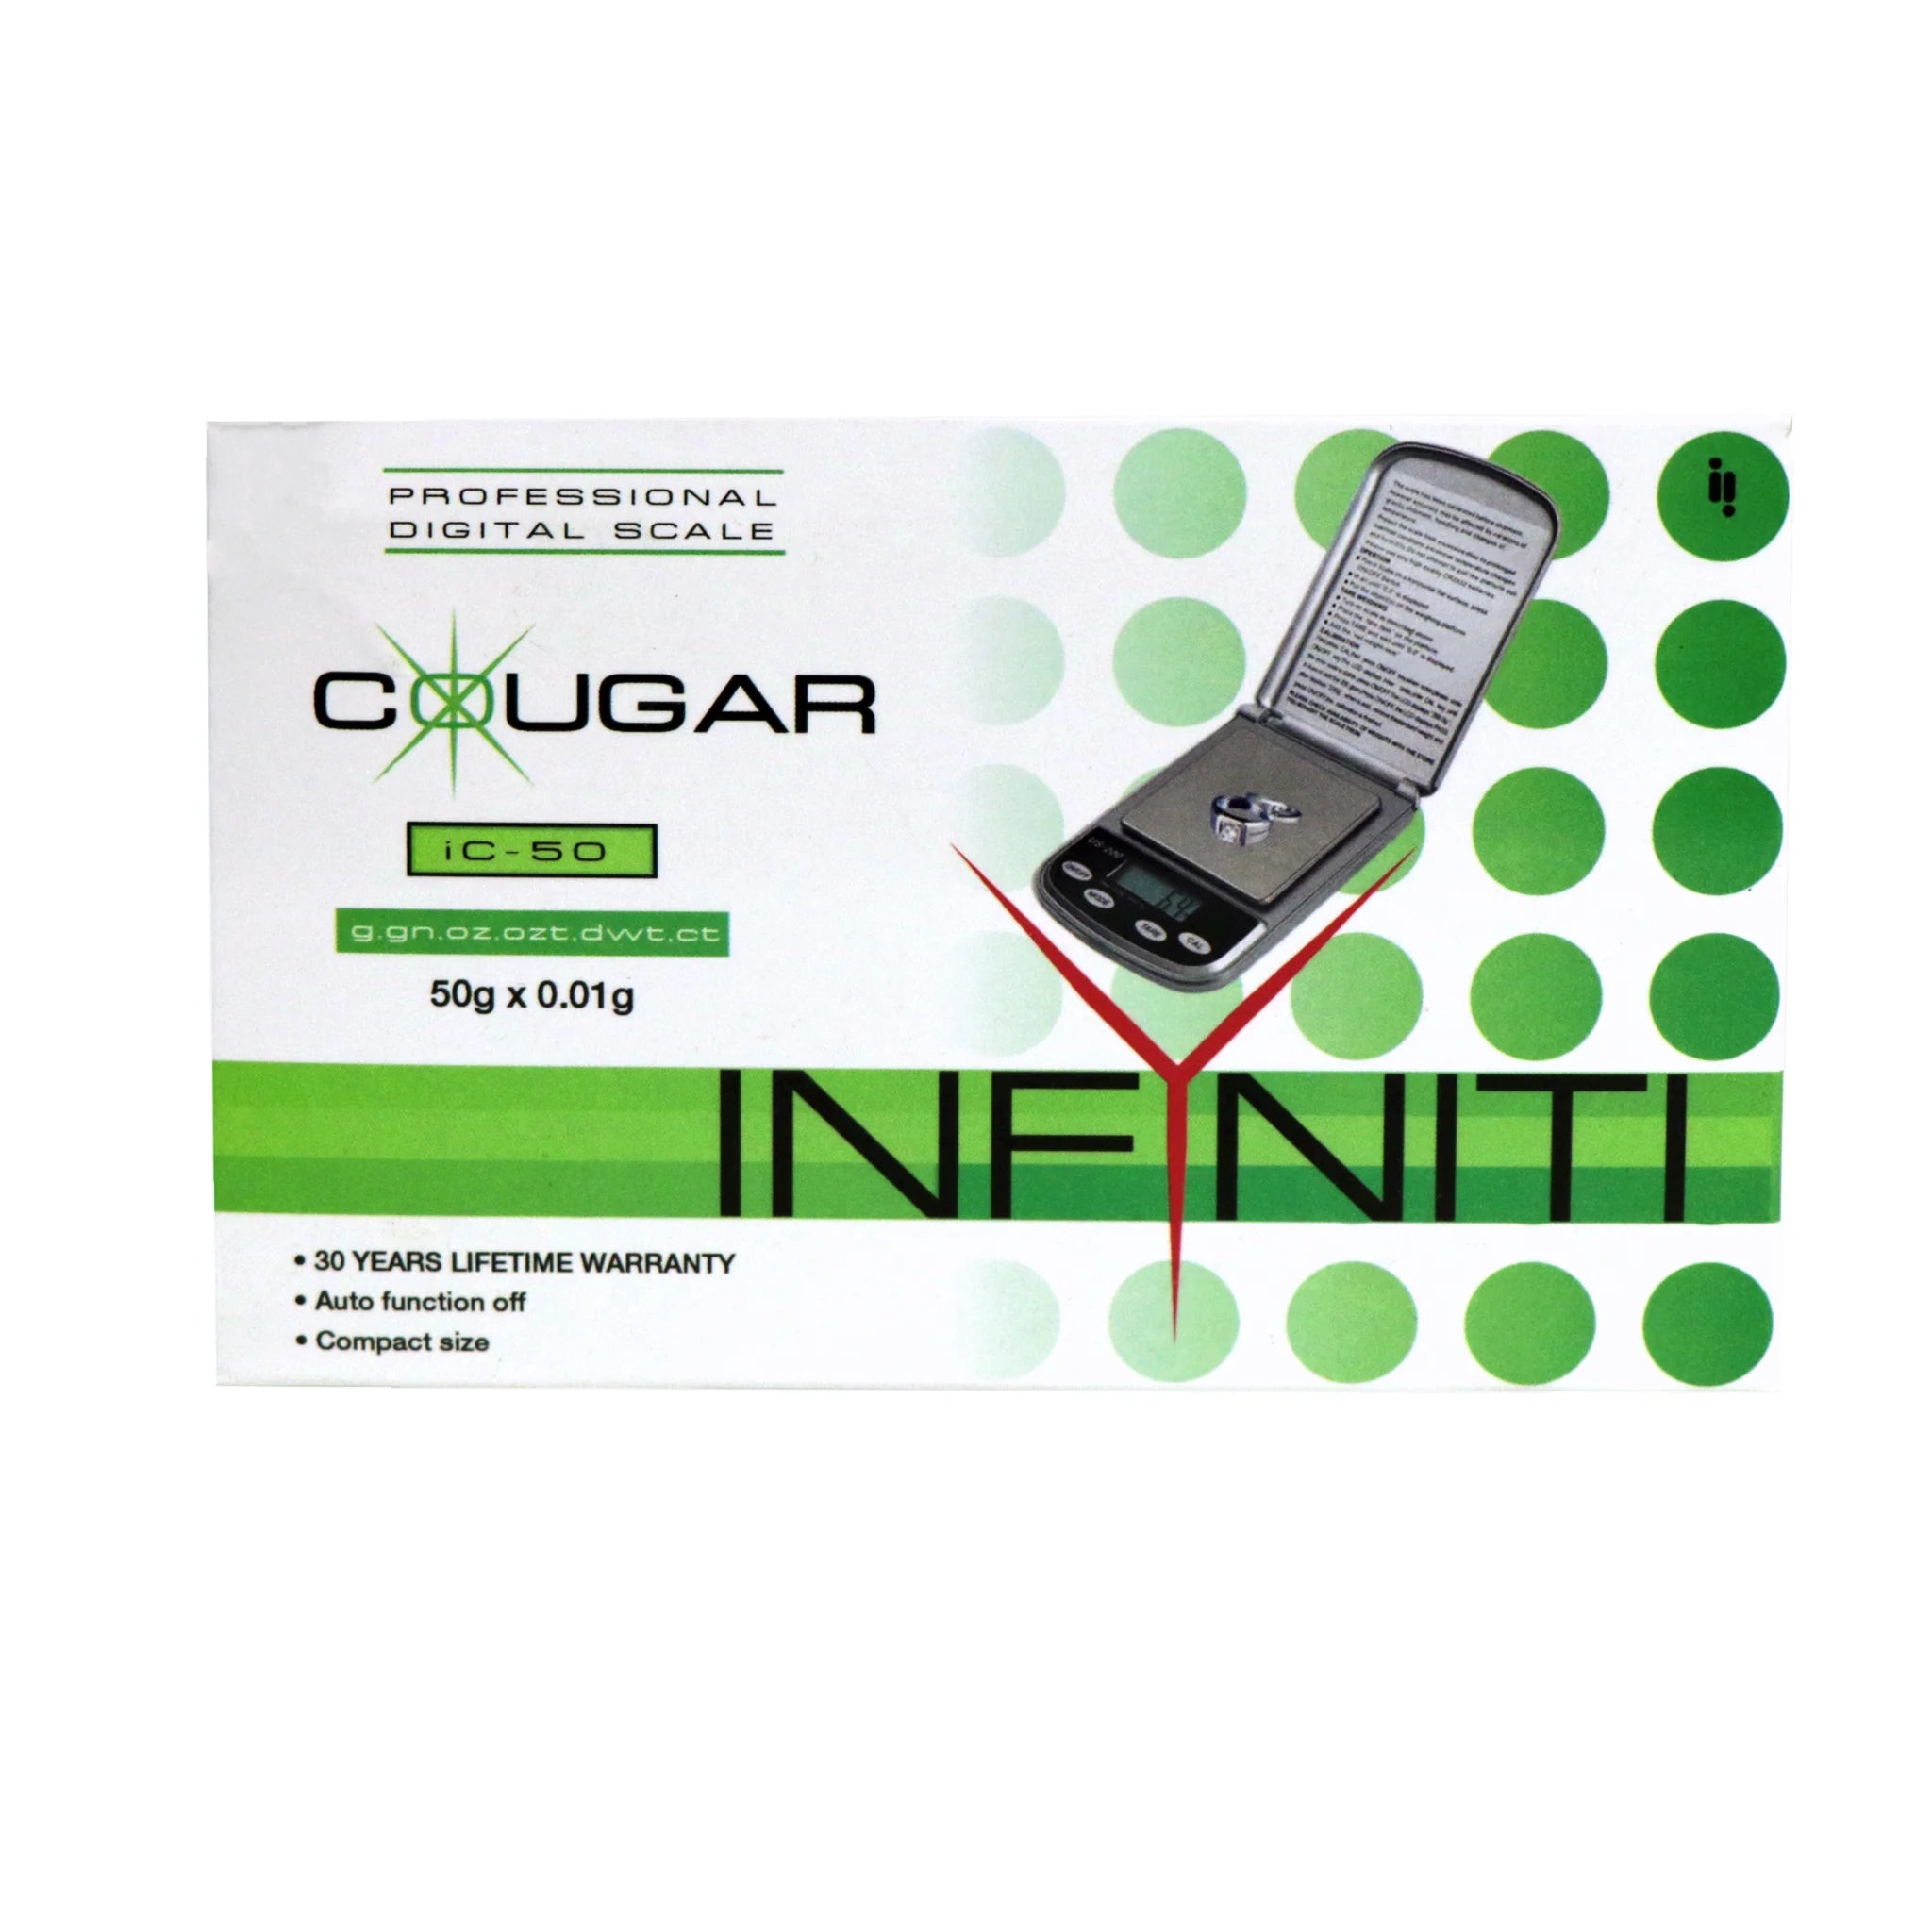 INFYNITI - COUGAR Digital Pocket Scale, 50g x 0.01g IC-50